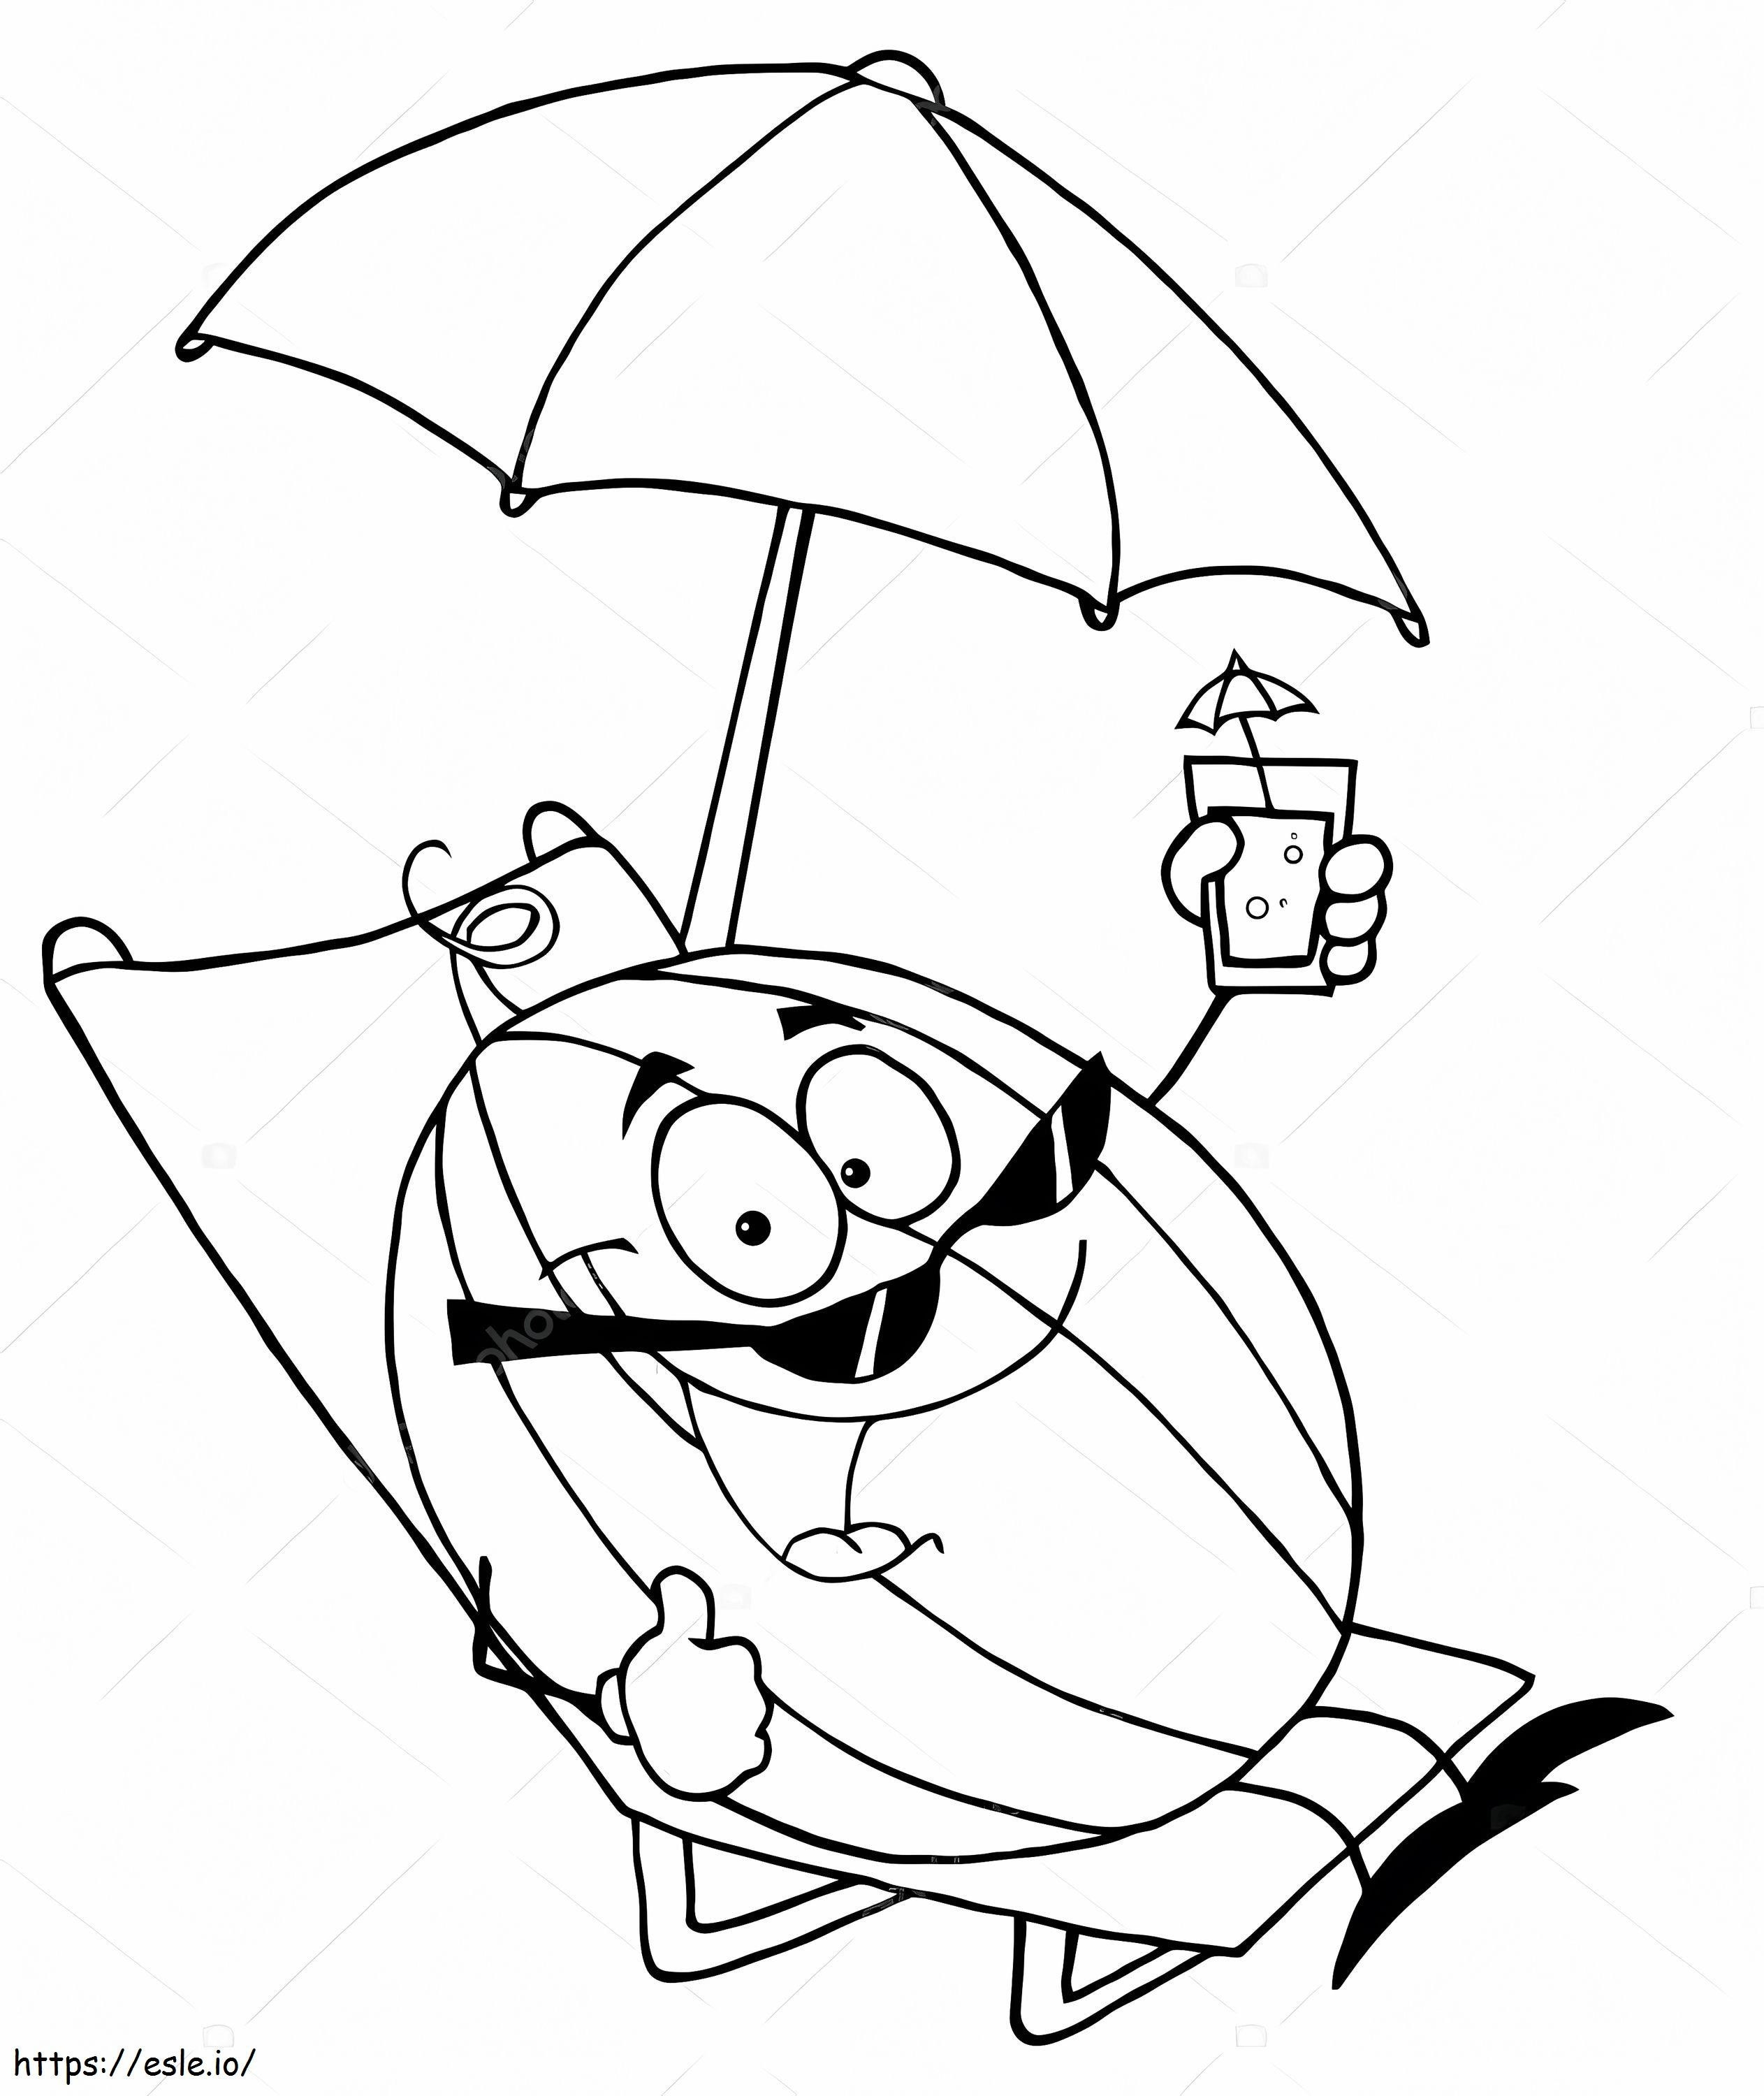  Depositphotos 61064939 Ilustração de personagem de desenho animado de melancia para colorir